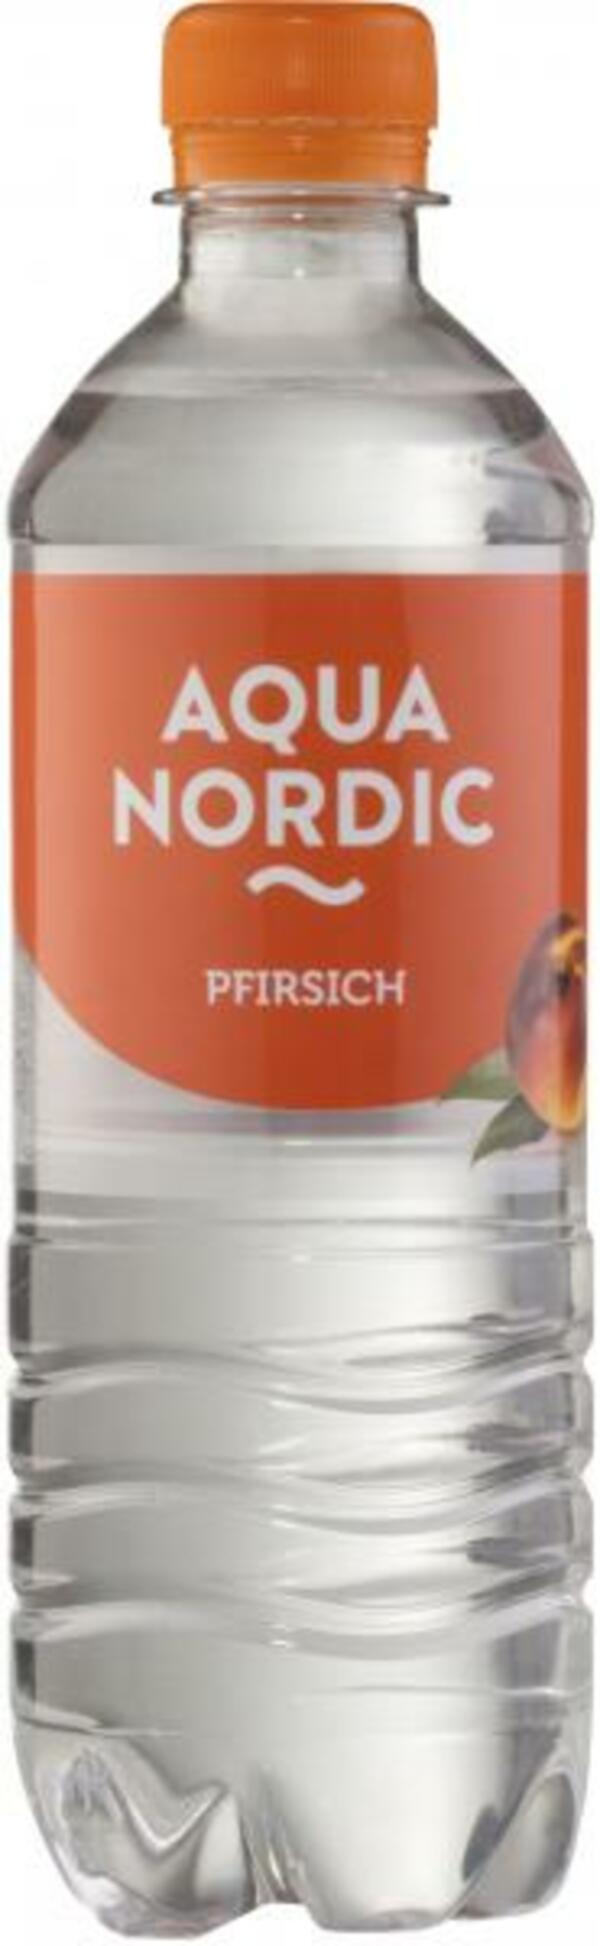 Bild 1 von Aqua Nordic Erfrischungsgetränk Pfirsich (Einweg)